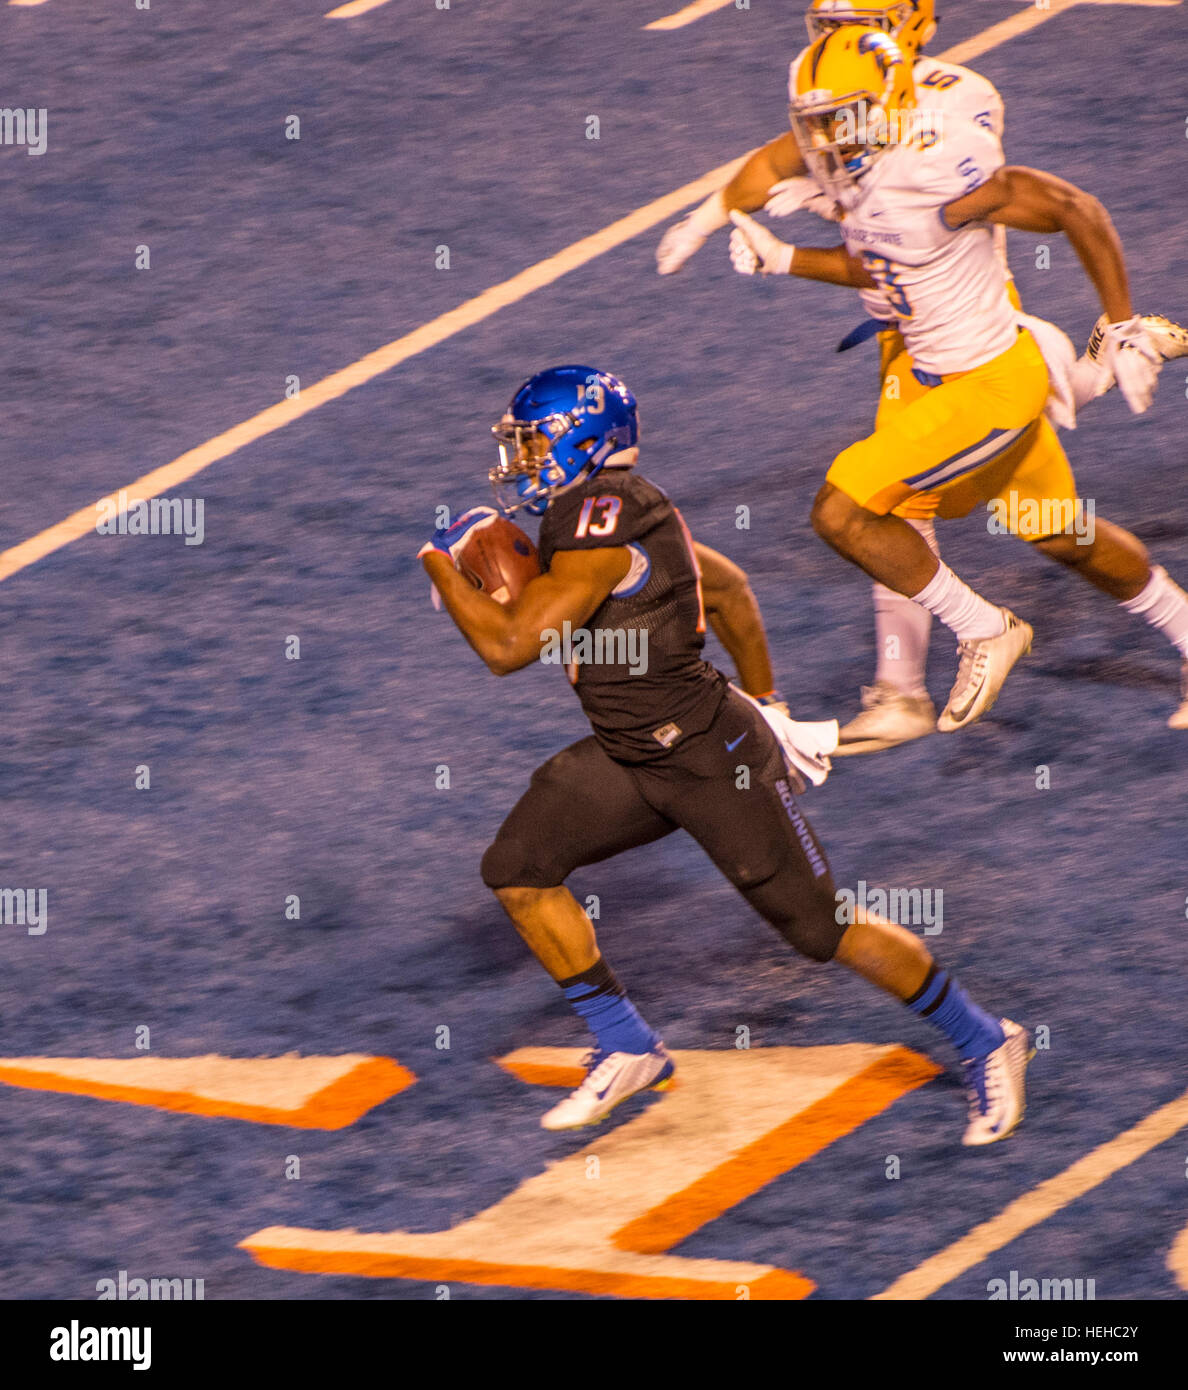 Boise State Football Game, Star running back Jeremy McNchols, Boise, Idaho, USA, 2016 Stock Photo